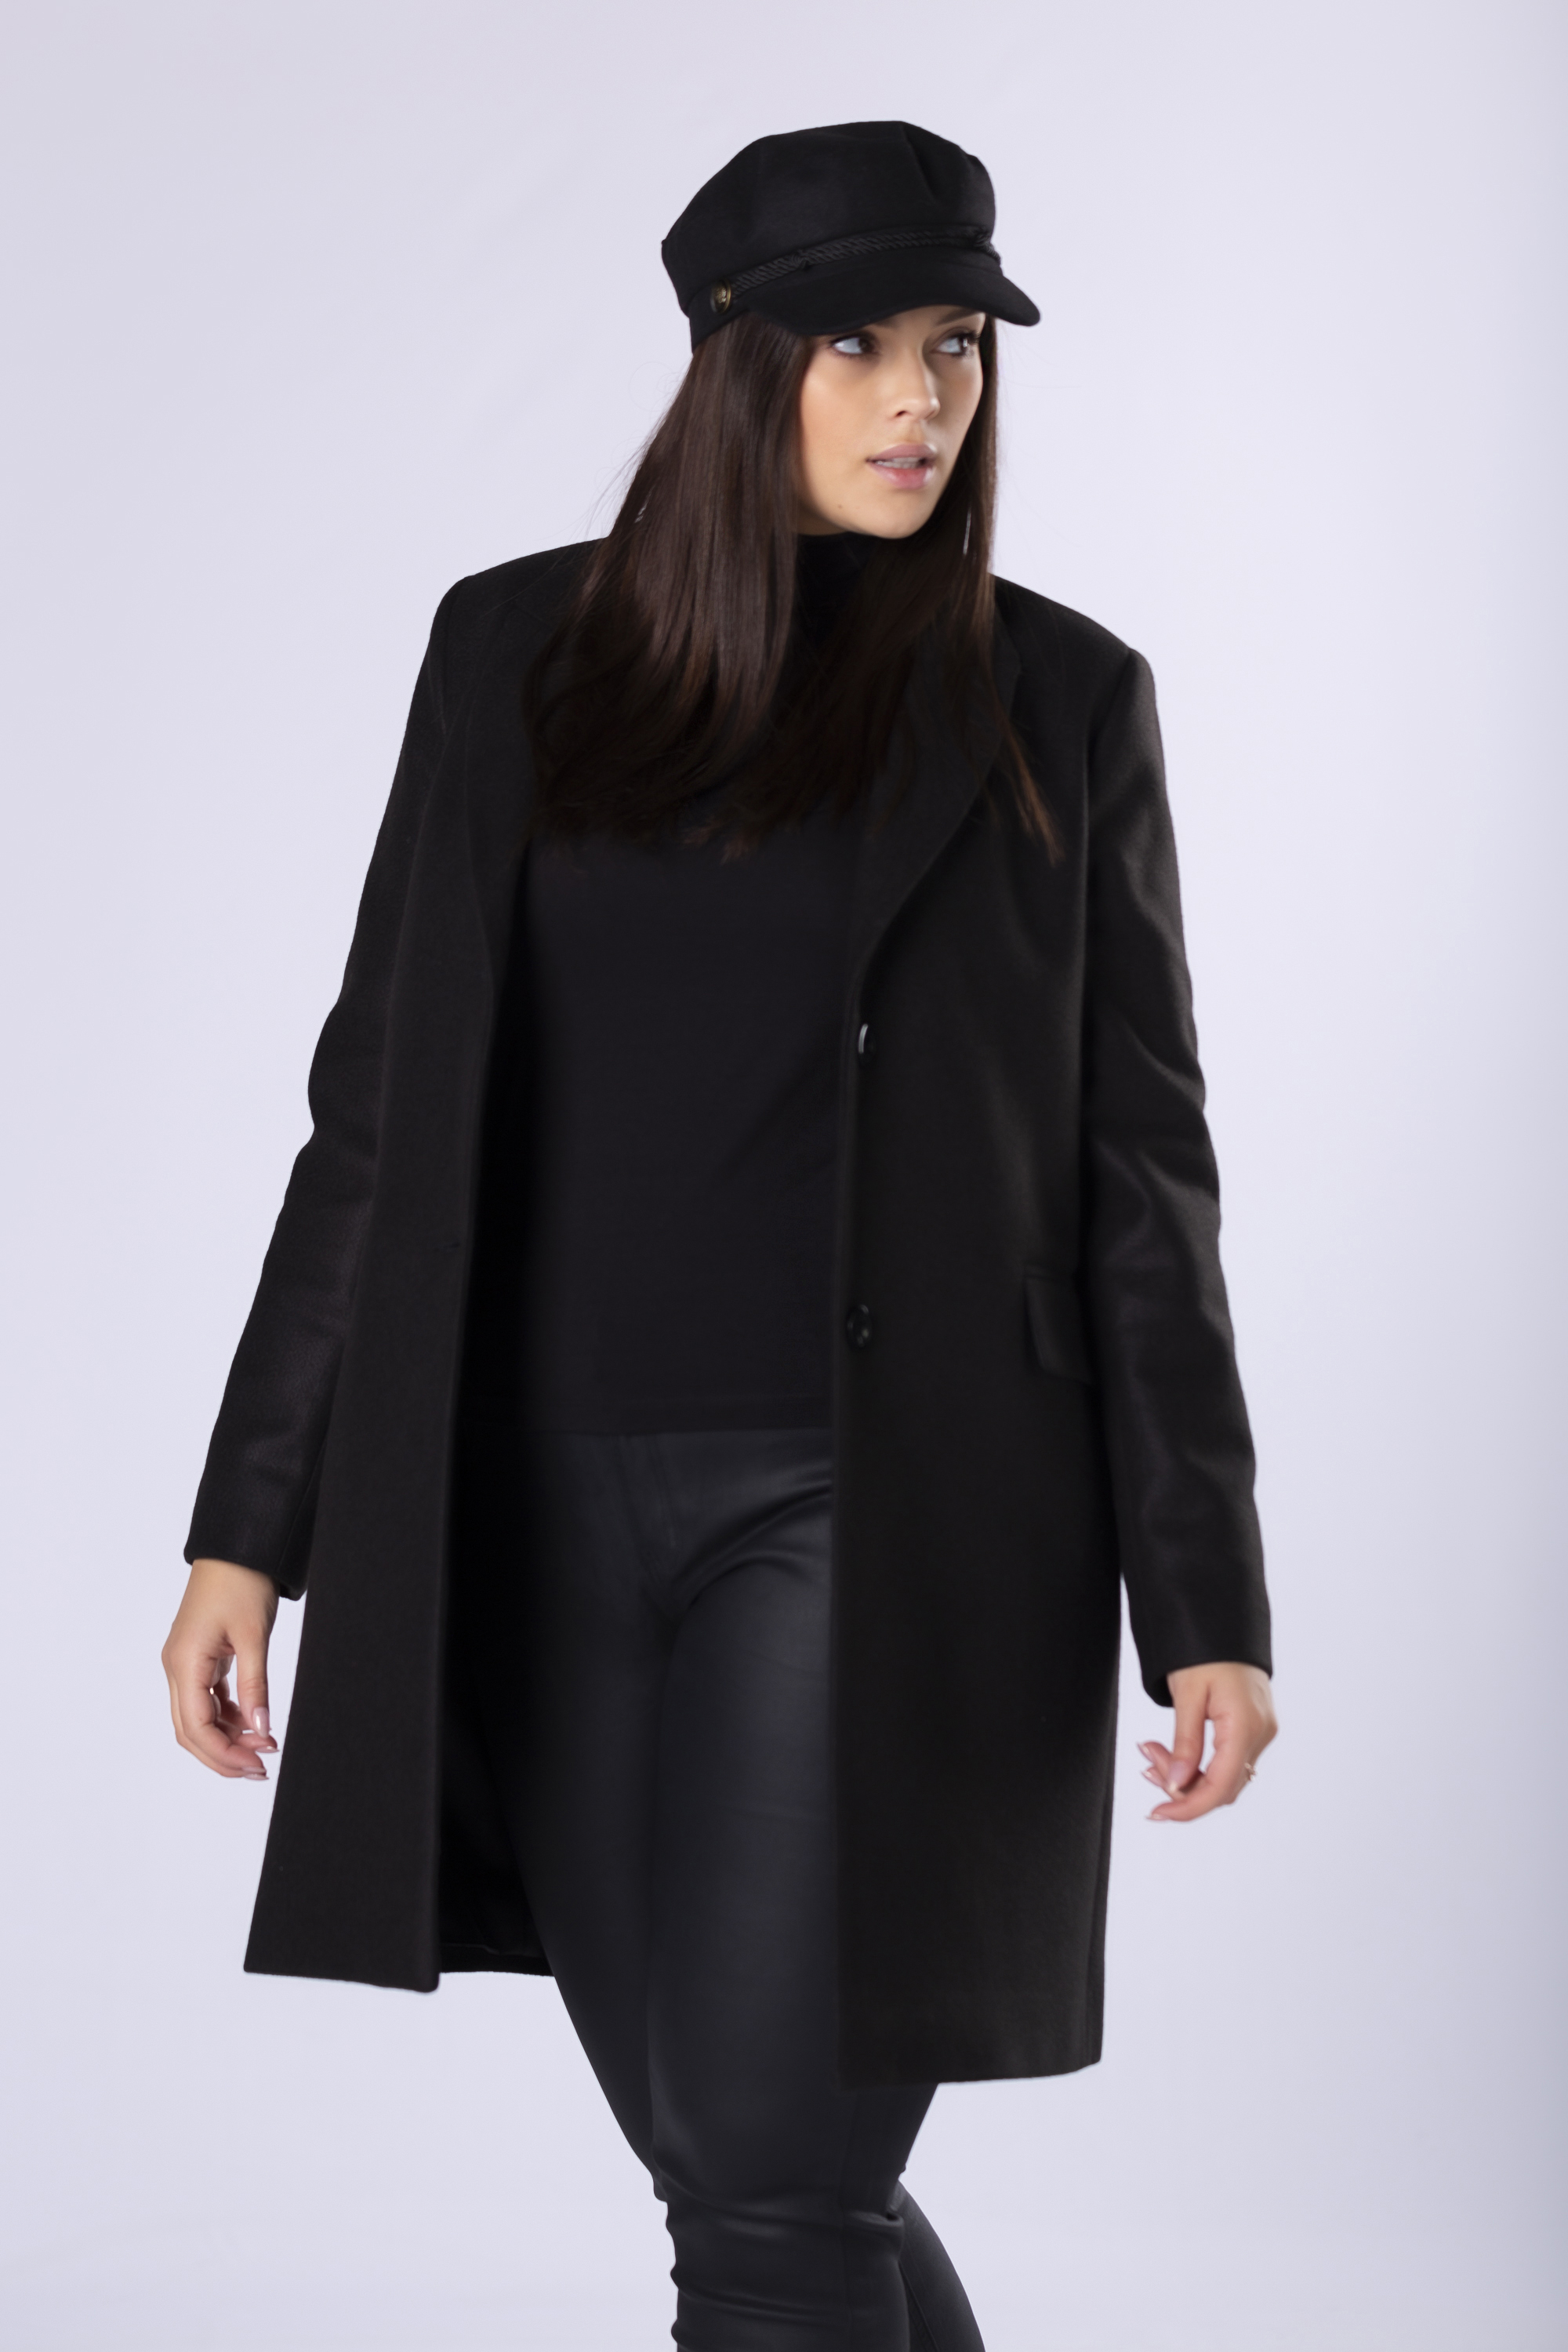 Čierny jednoradový kabát na gombíky